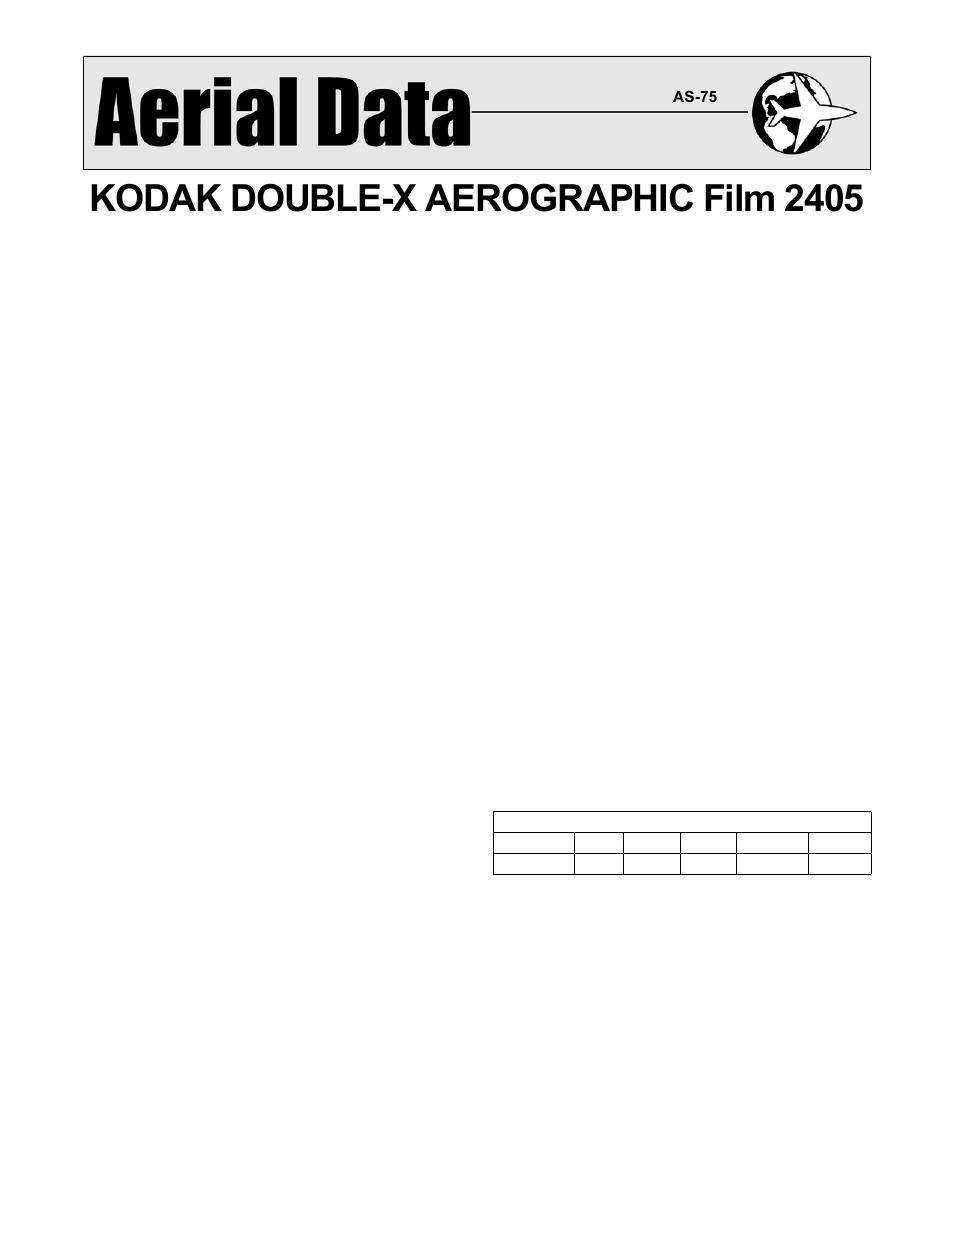 Kodak double x 2405 zales sizing chart